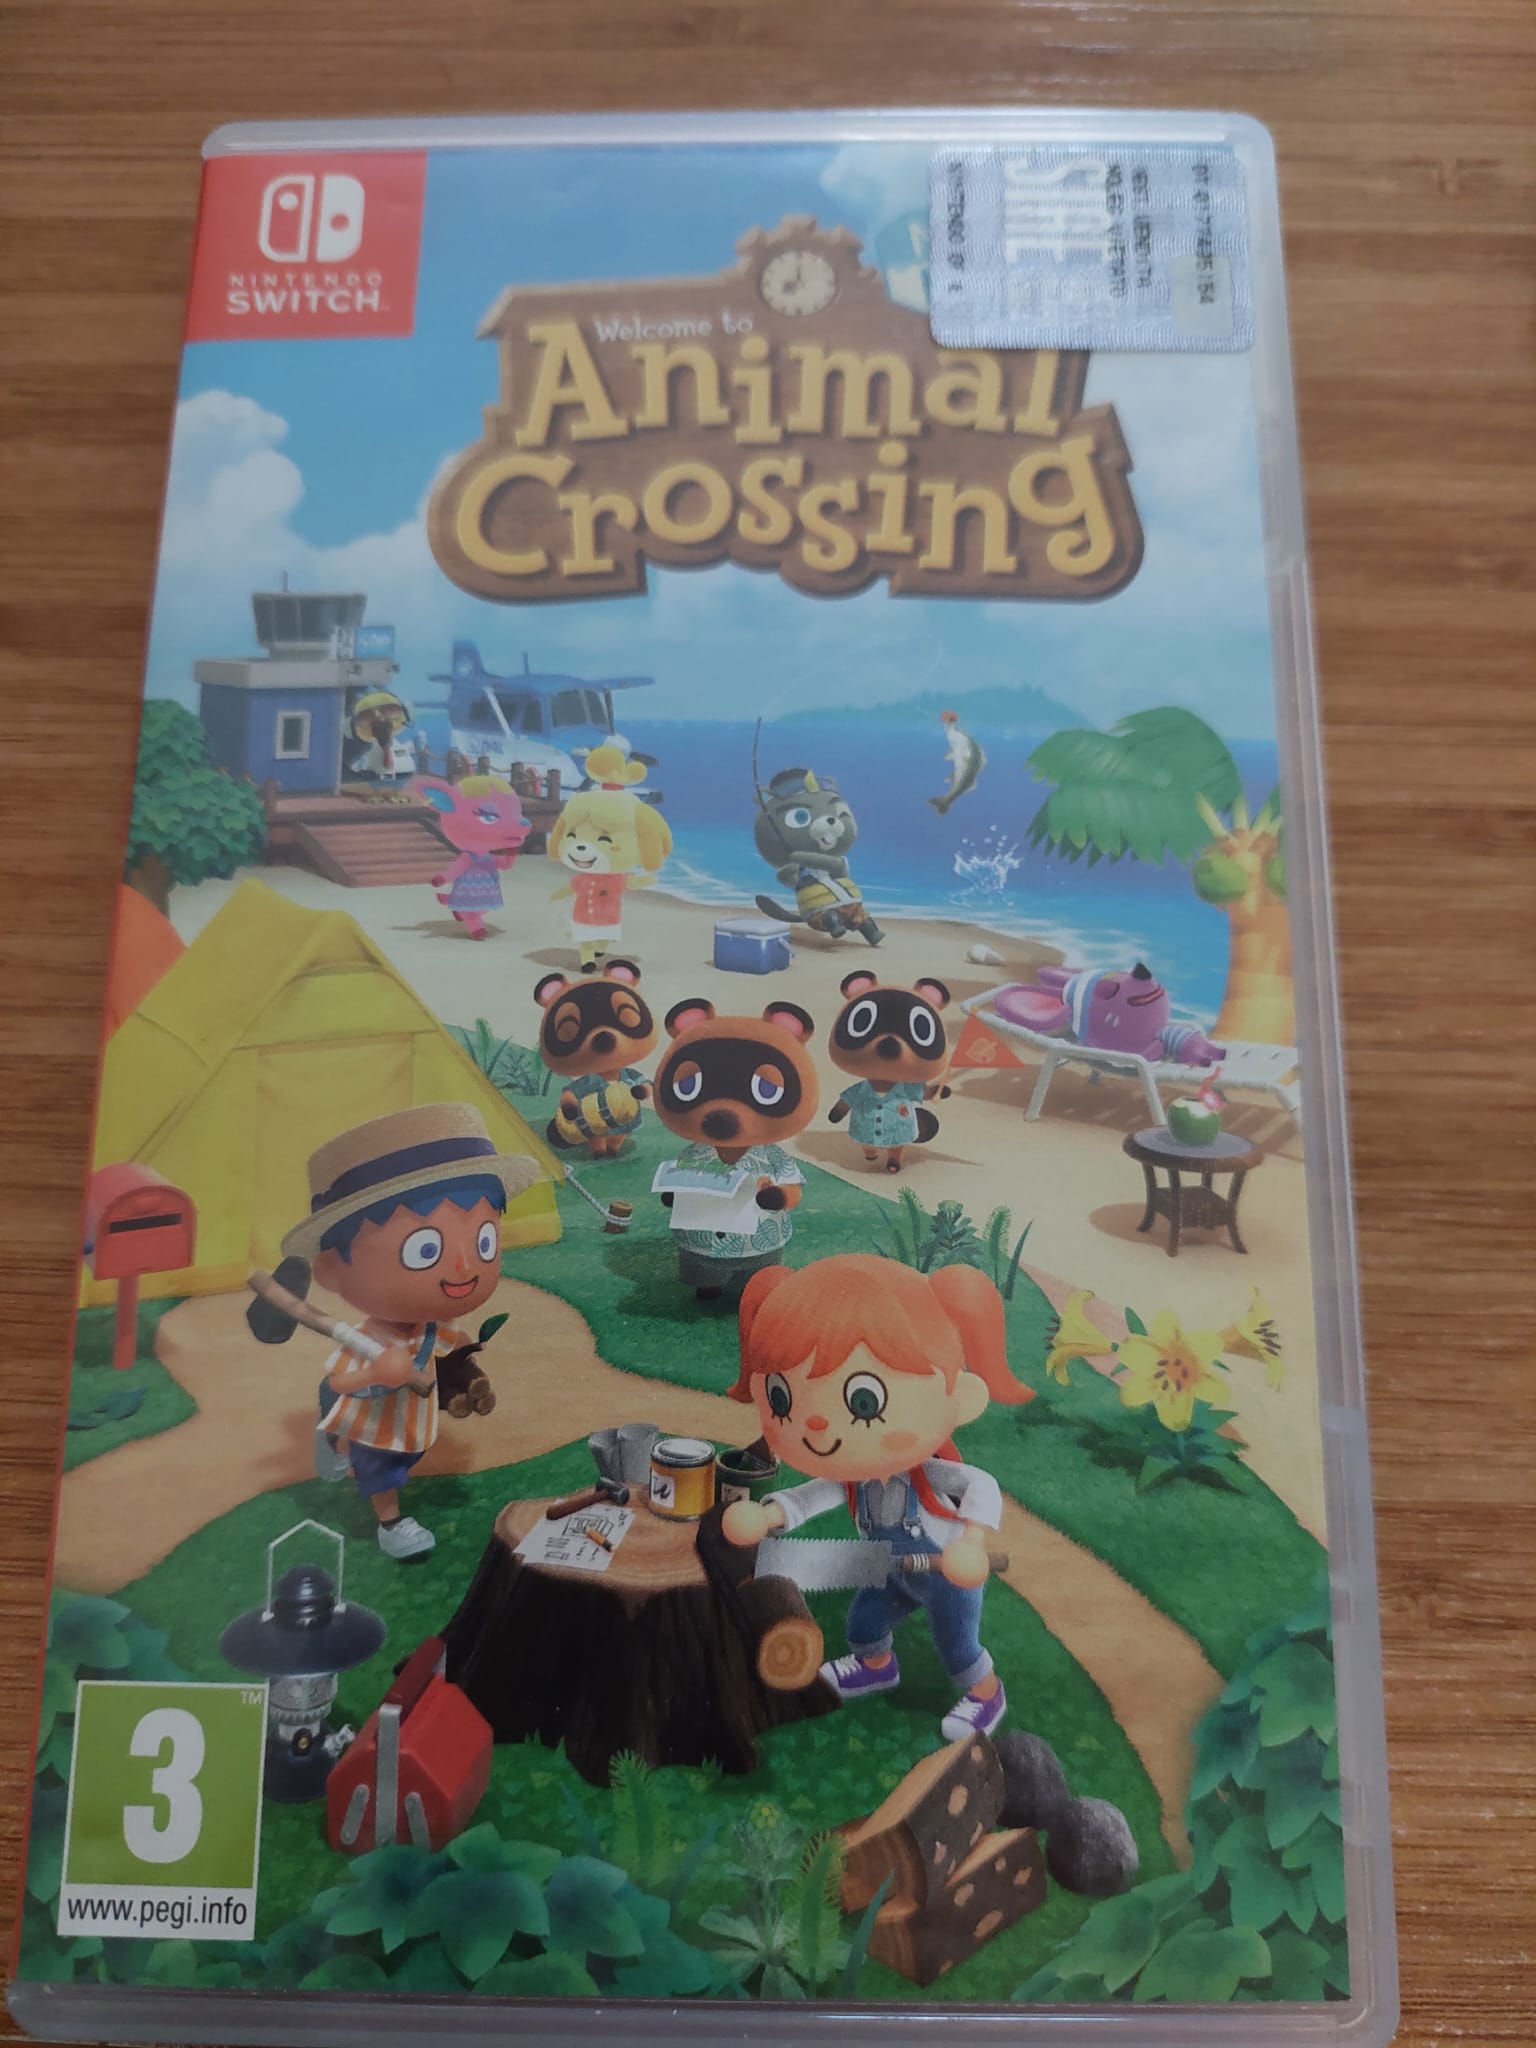 SATILDI] Satılık Animal Crossing Kutulu | DonanımHaber Forum